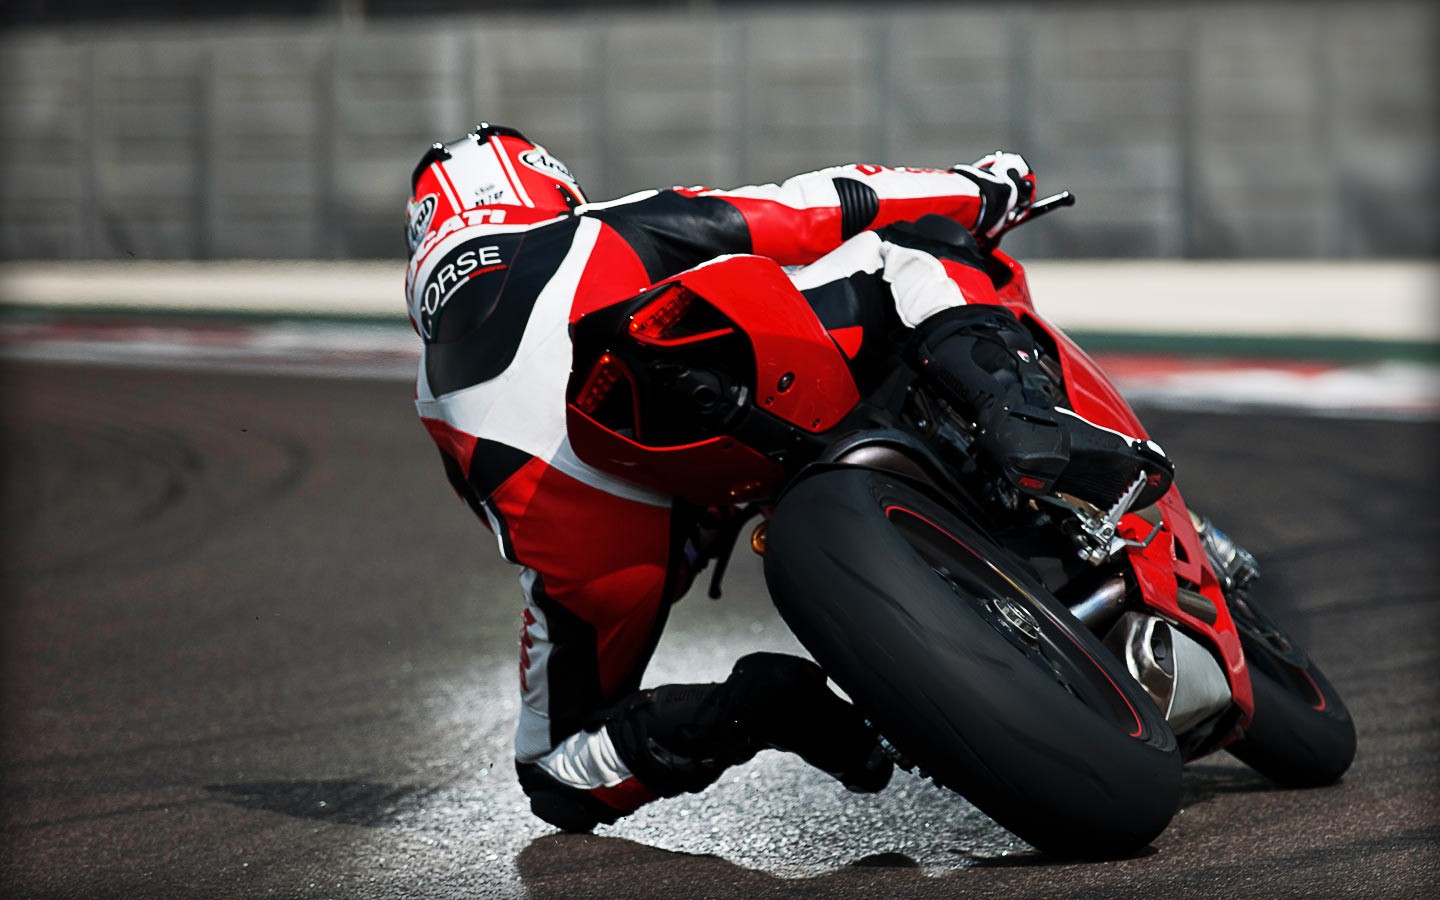 General 1440x900 Ducati motorcycle Ducati 1199 racing sport asphalt vehicle Italian motorcycles Volkswagen Group